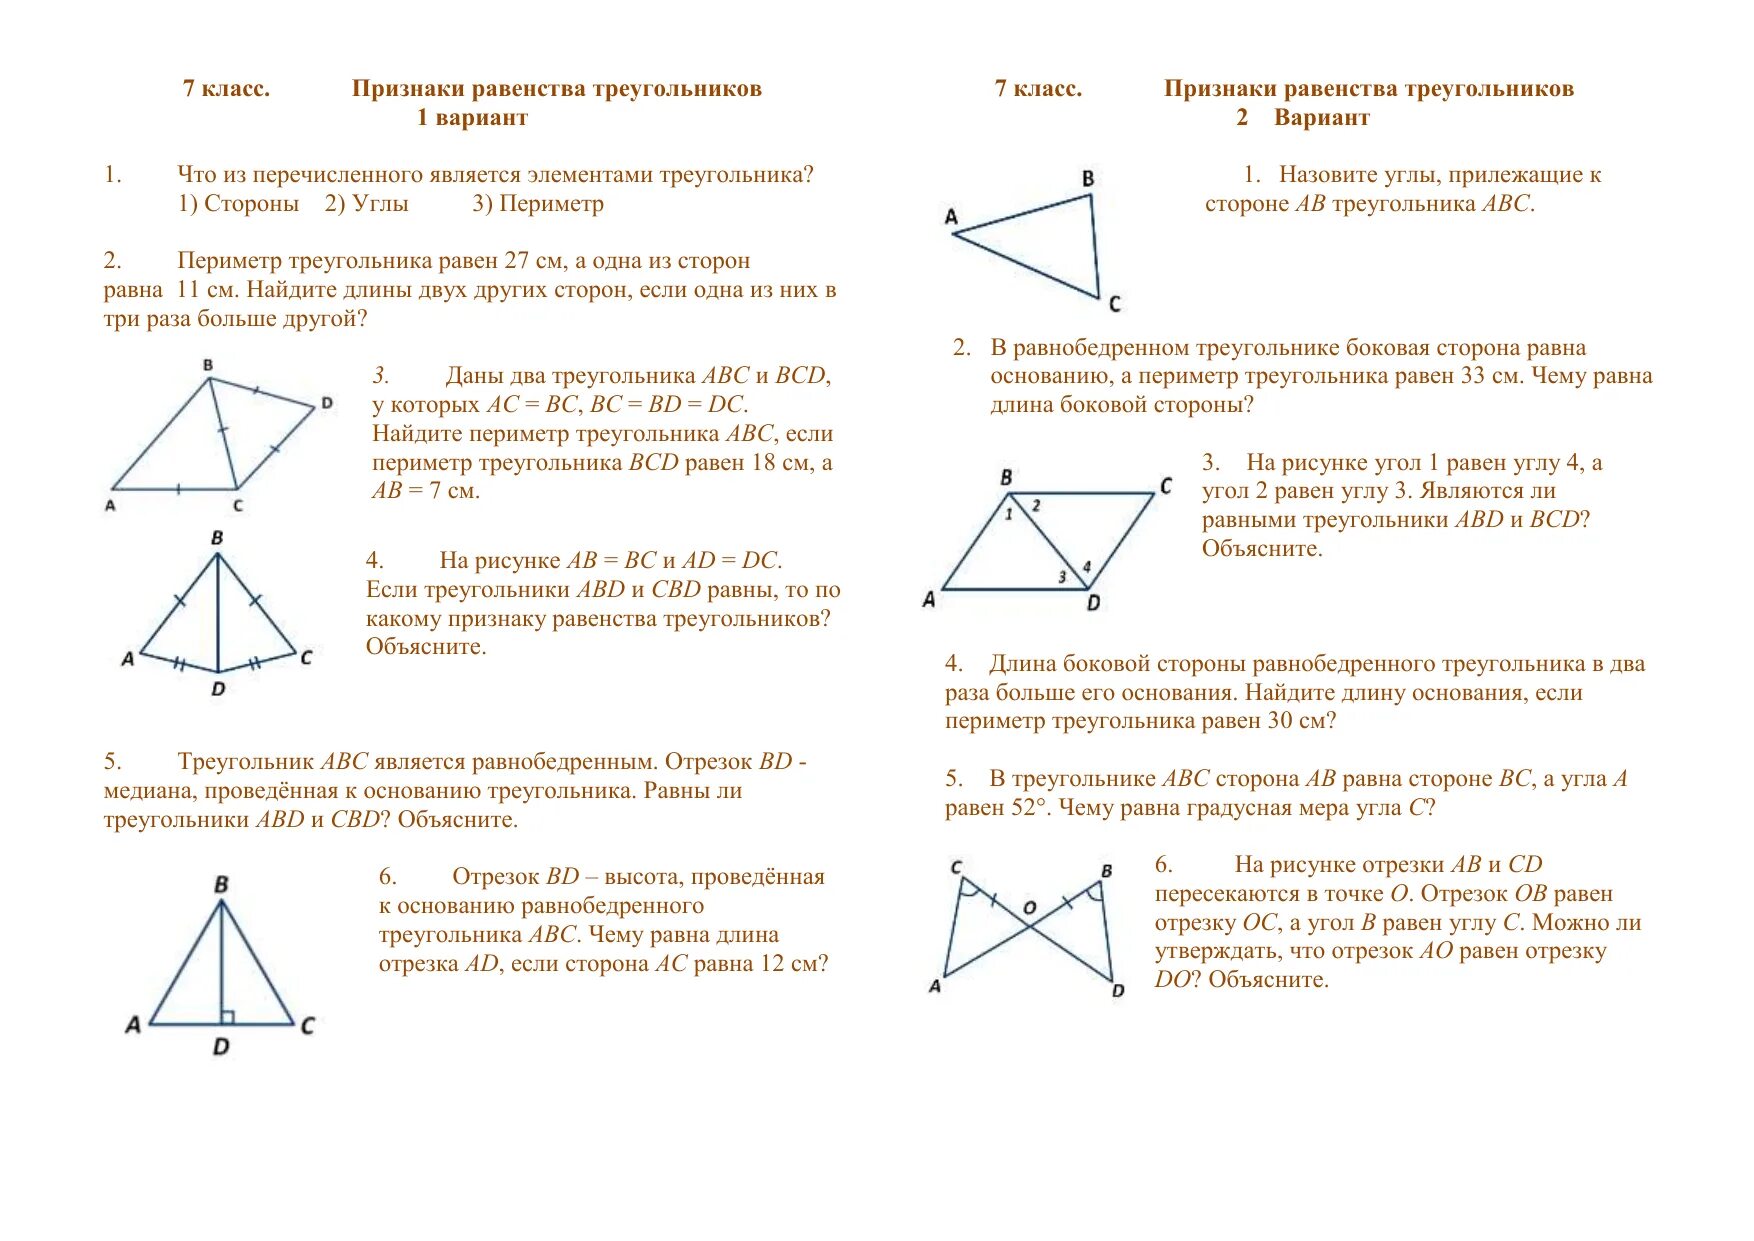 Тест треугольники признаки равенства треугольников ответы. Задачи на 1.2.3 признак равенства треугольников. Признаки равенства треугольников самостоятельная работа. Признаки равенства треугольников 7 класс самостоятельная работа. Равенства треугольников 7 класс геометрия.